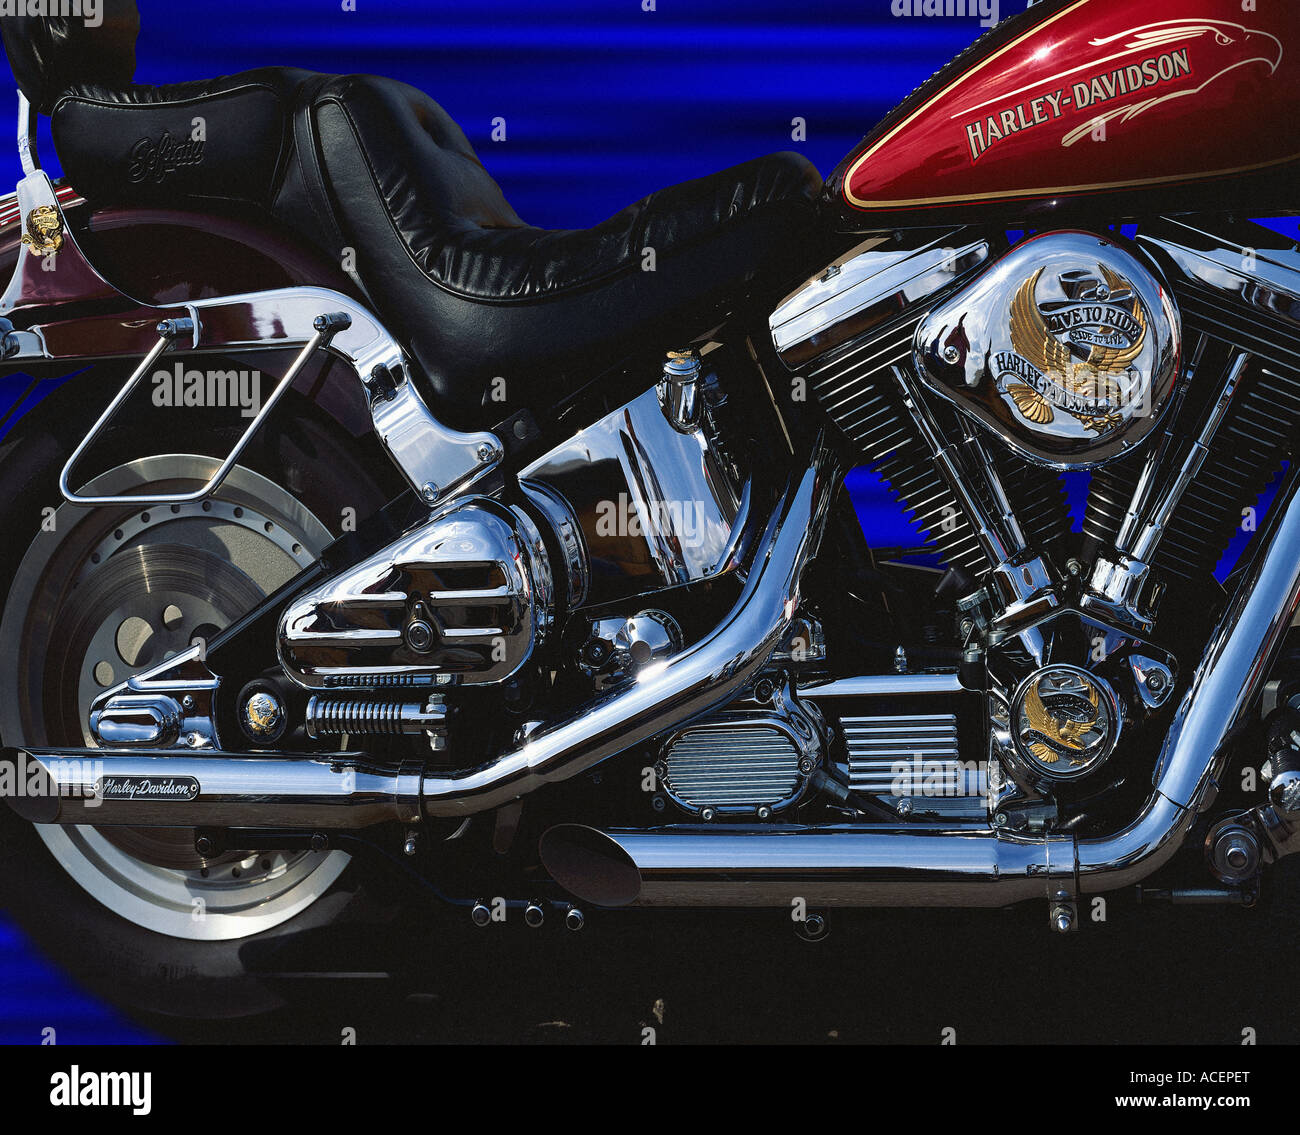 Arte della foto: Harley Davidson Foto Stock